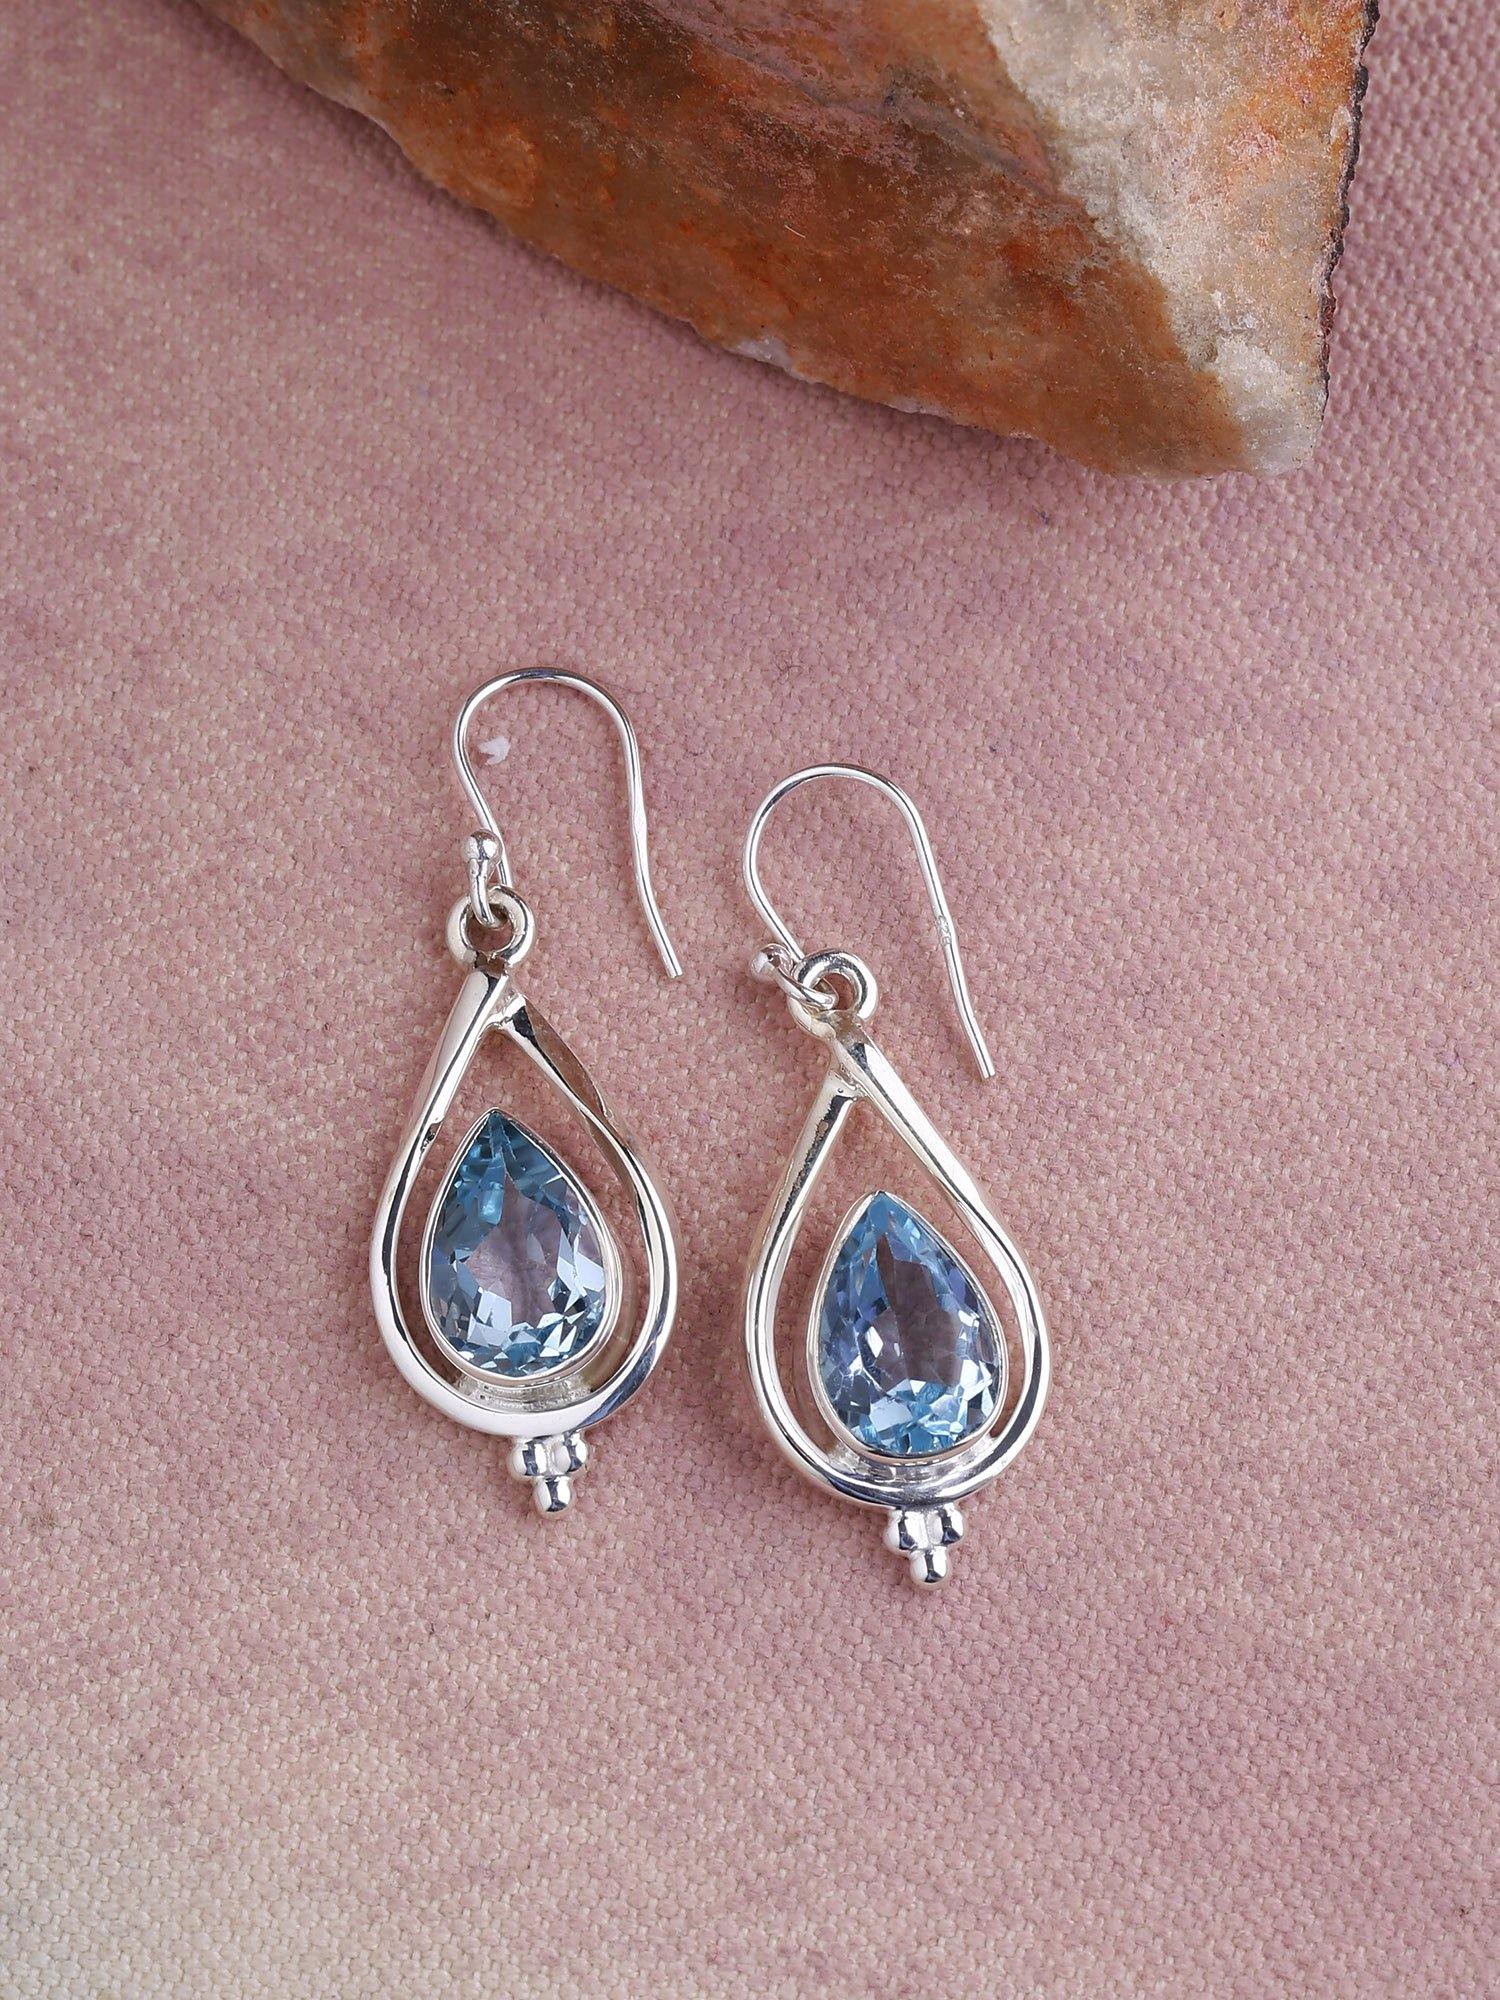 Blue Topaz Solid 925 Sterling Silver Dangle Earrings - YoTreasure